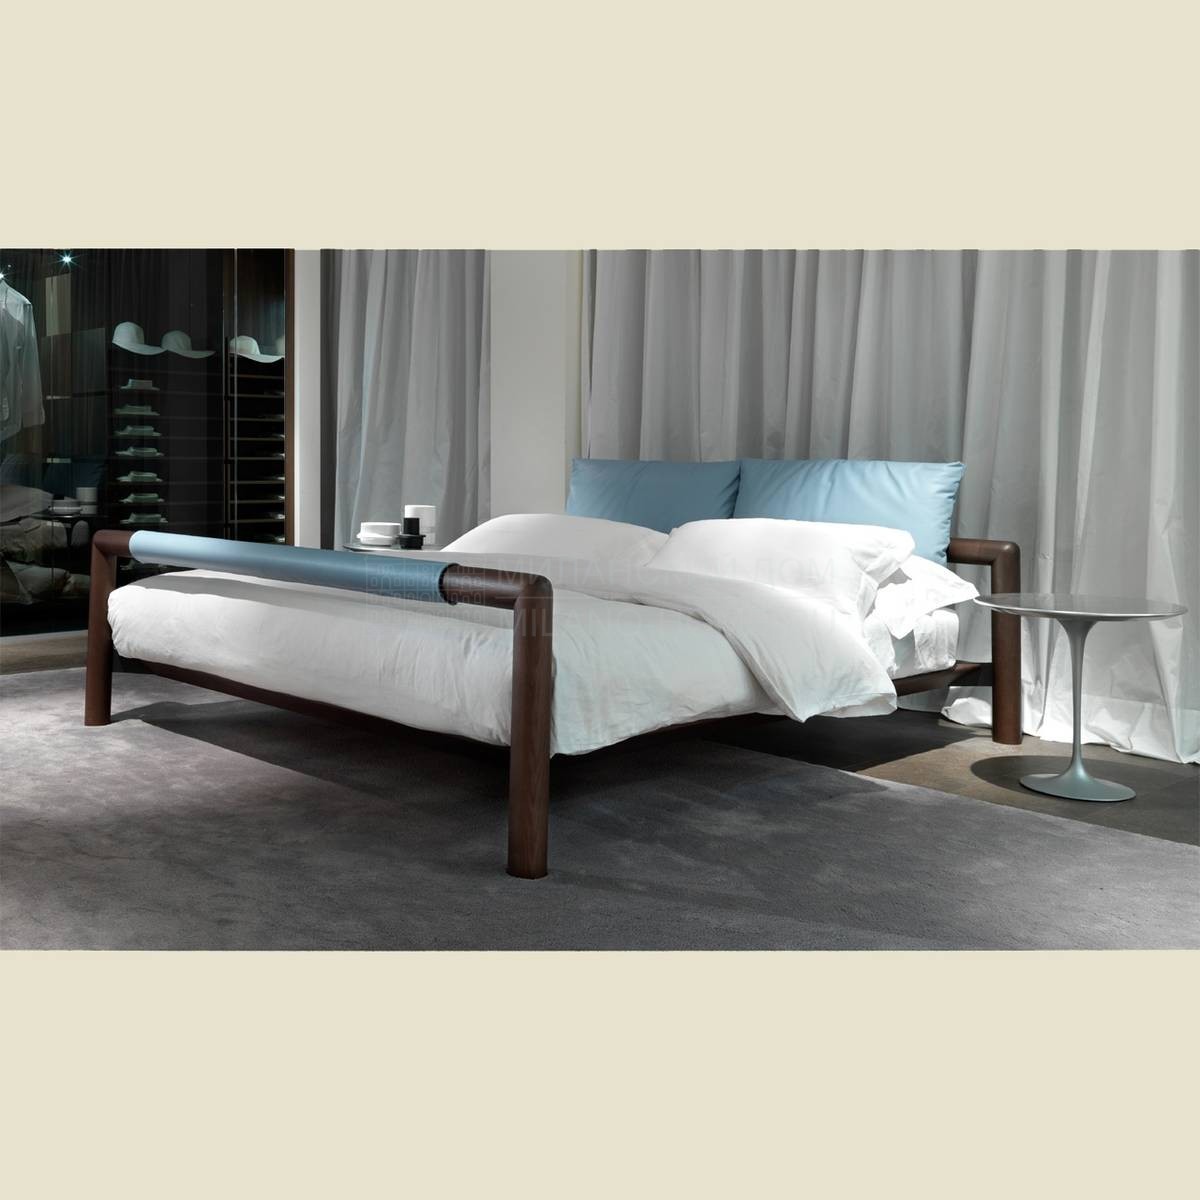 Двуспальная кровать Charlotte / bed из Италии фабрики BESANA